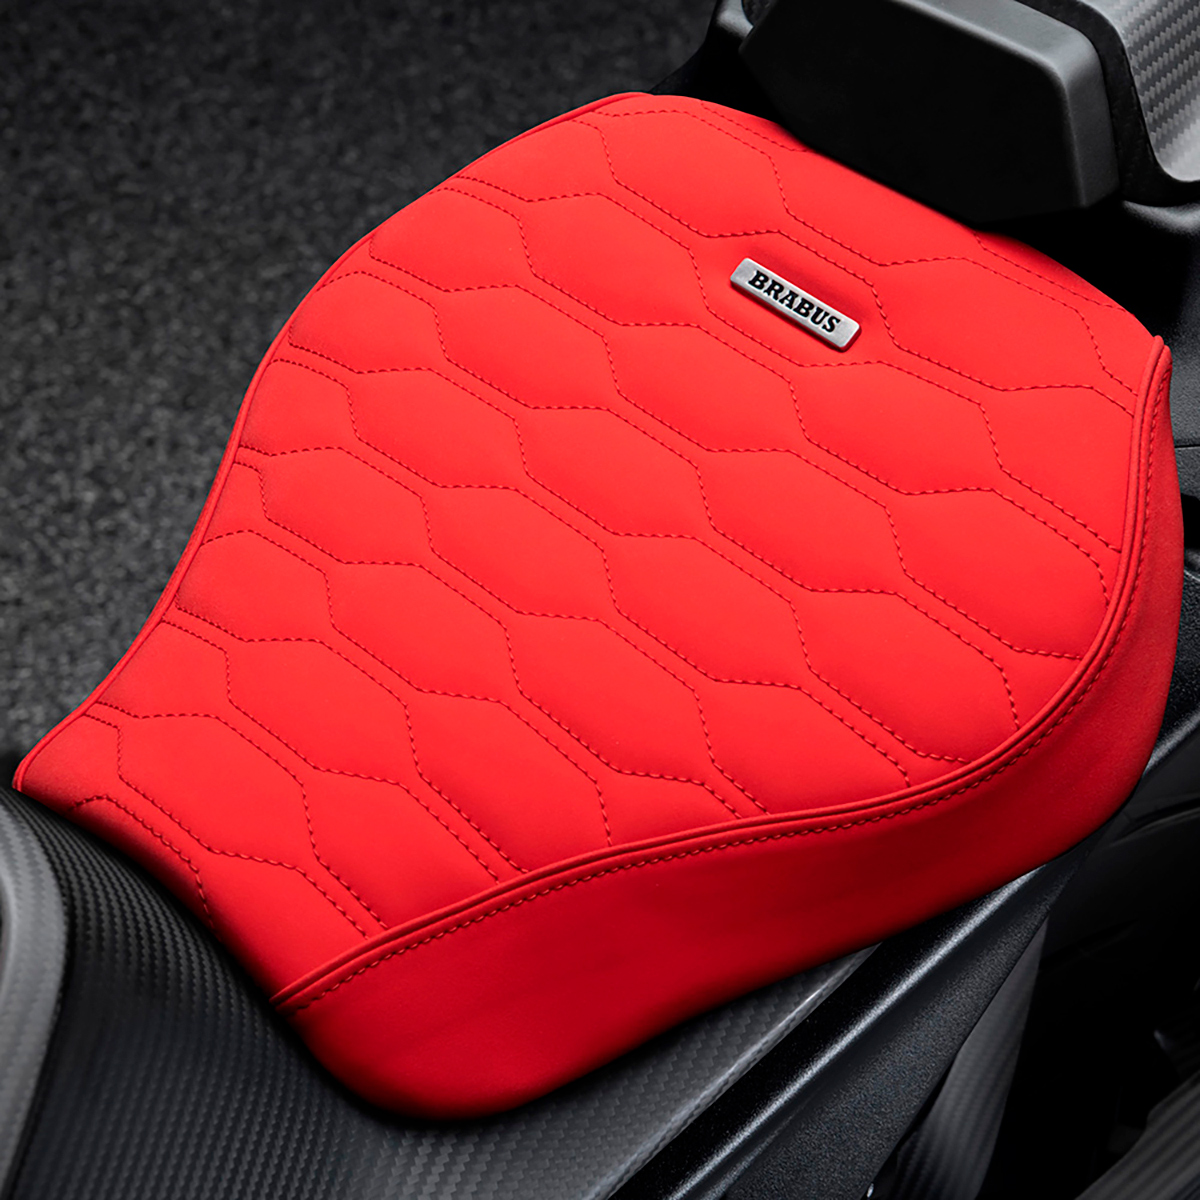 La nueva KTM Brabus 1300 R cuenta con un nuevo sillín tapizado a mano a elegir en rojo o negro